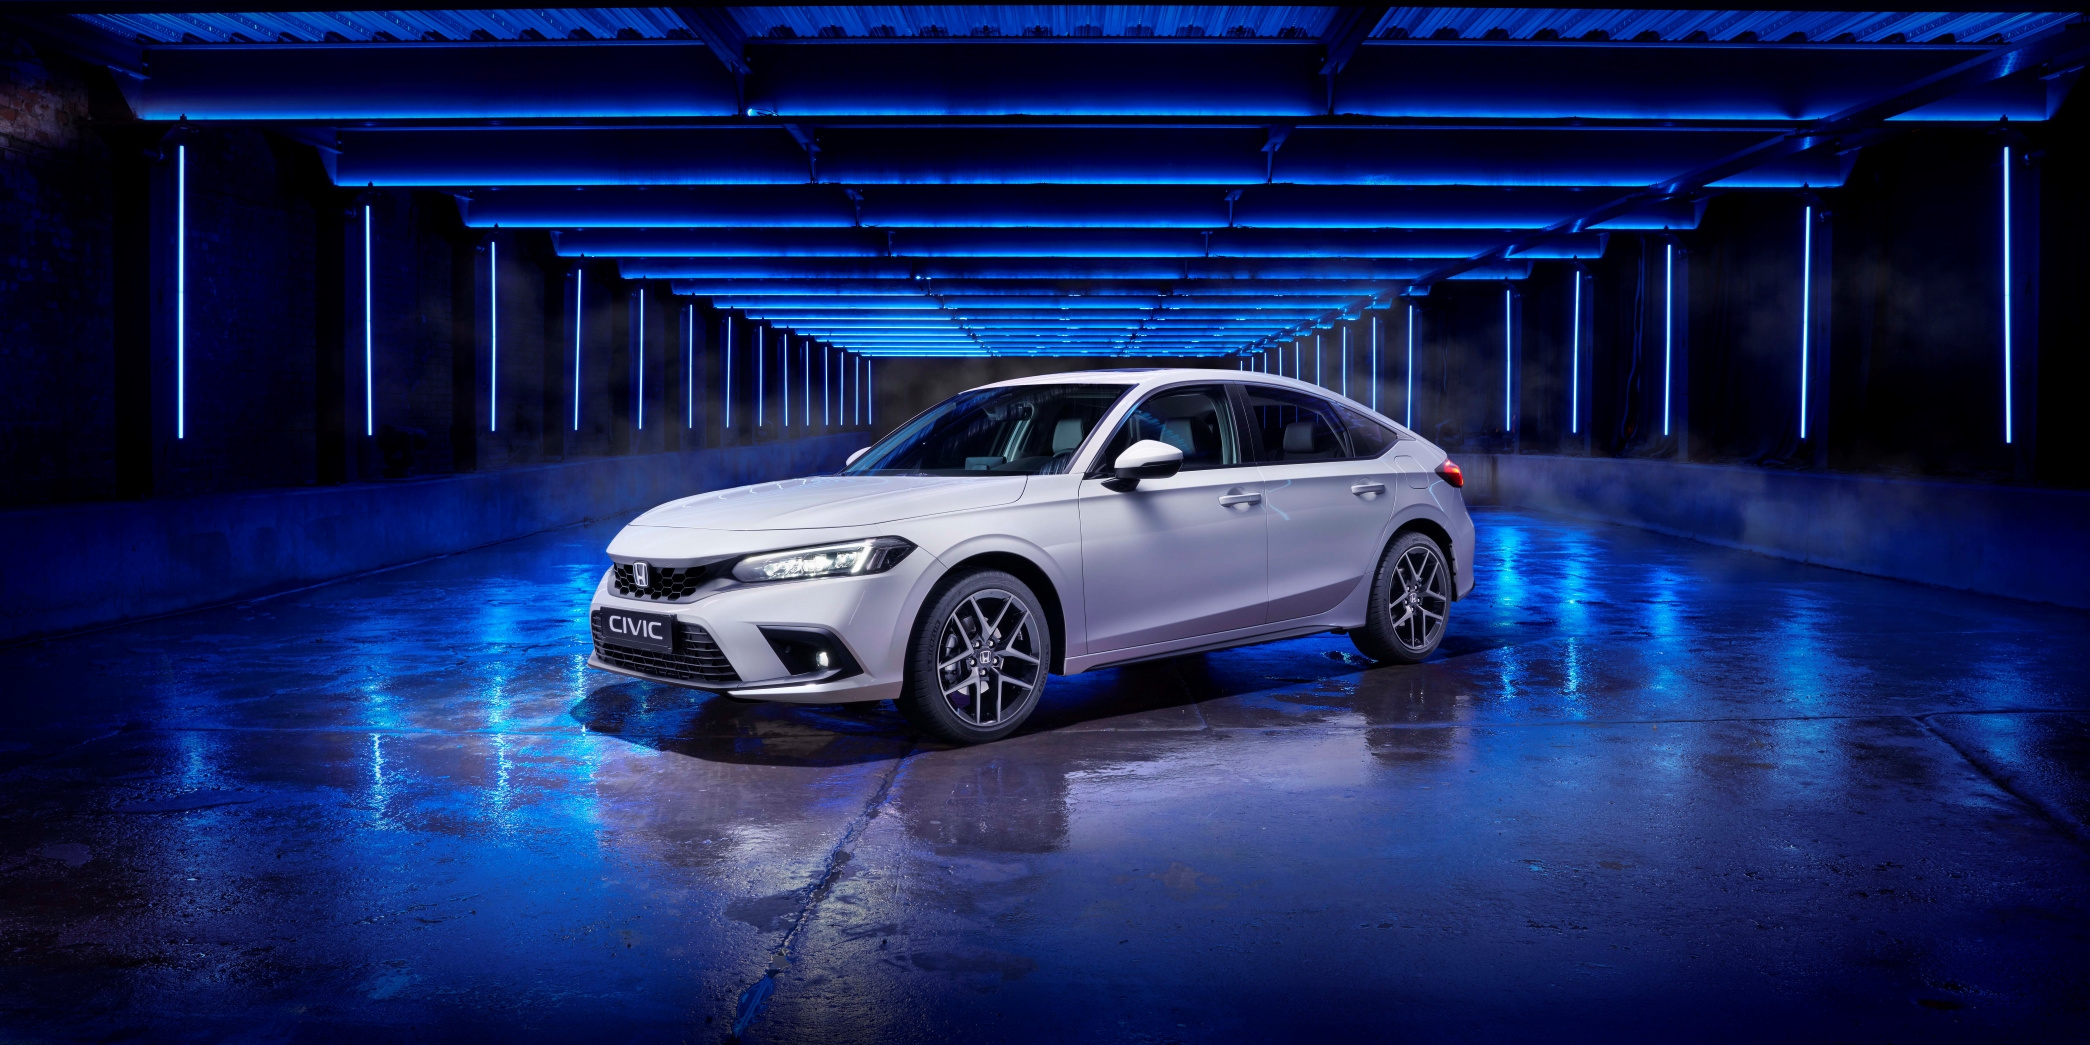 En ny 2022 Honda Civic, set skråt forfra, med hvid finish og fotograferet i studie med blå belysning